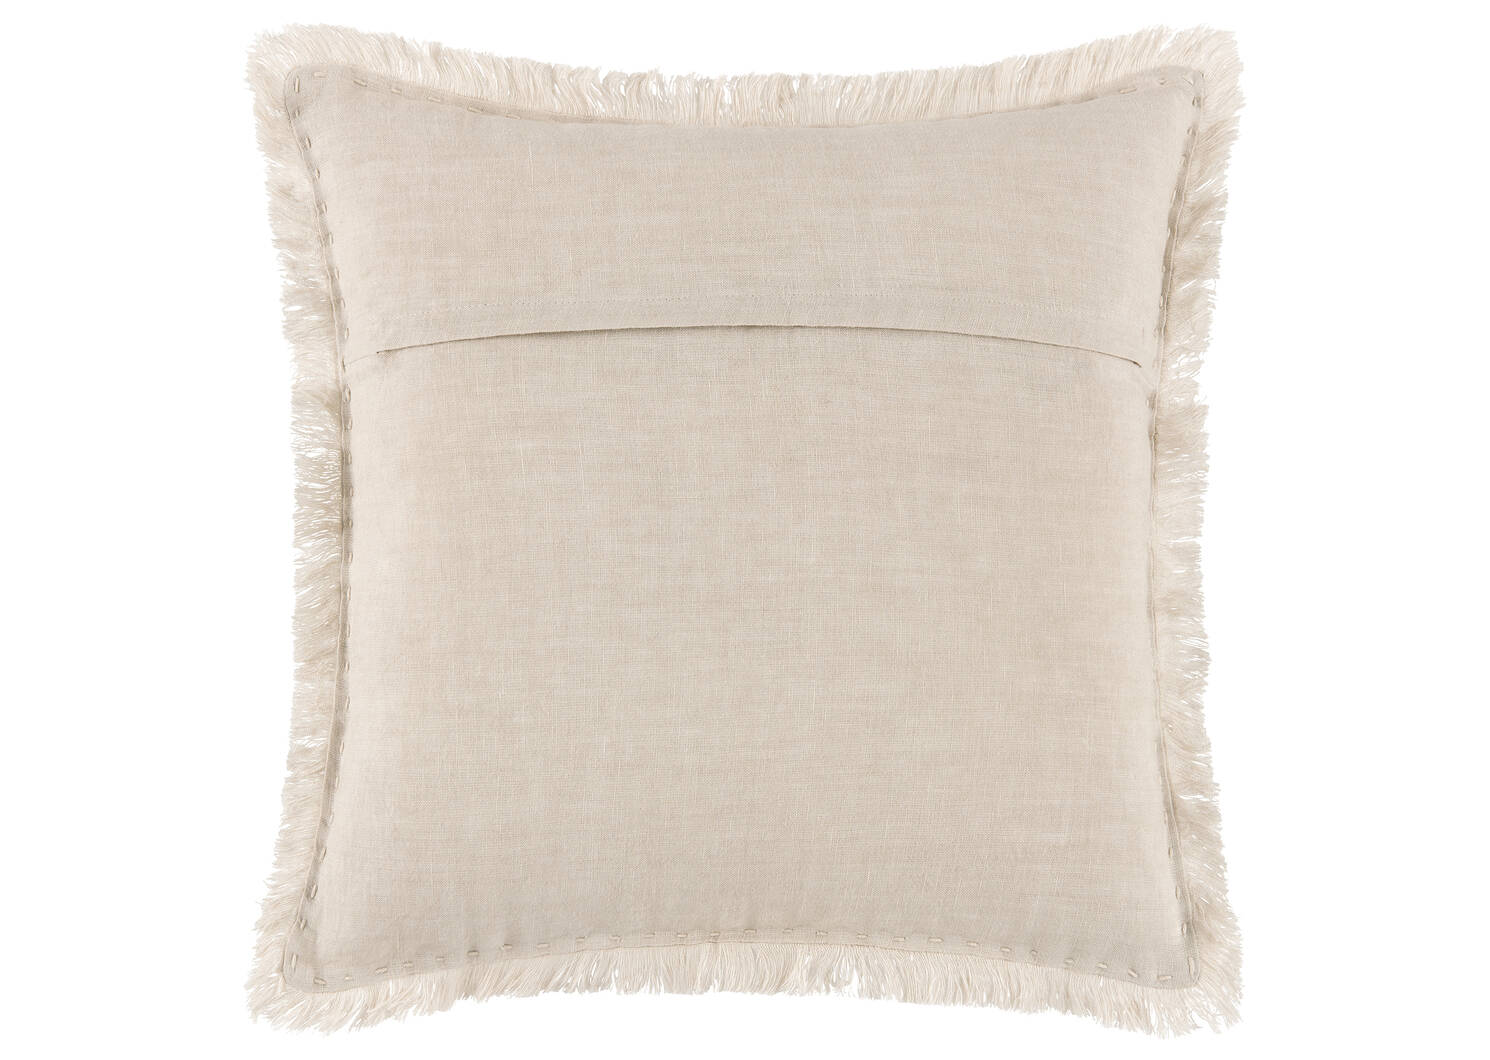 Marsha Linen Pillow 20x20 Sand